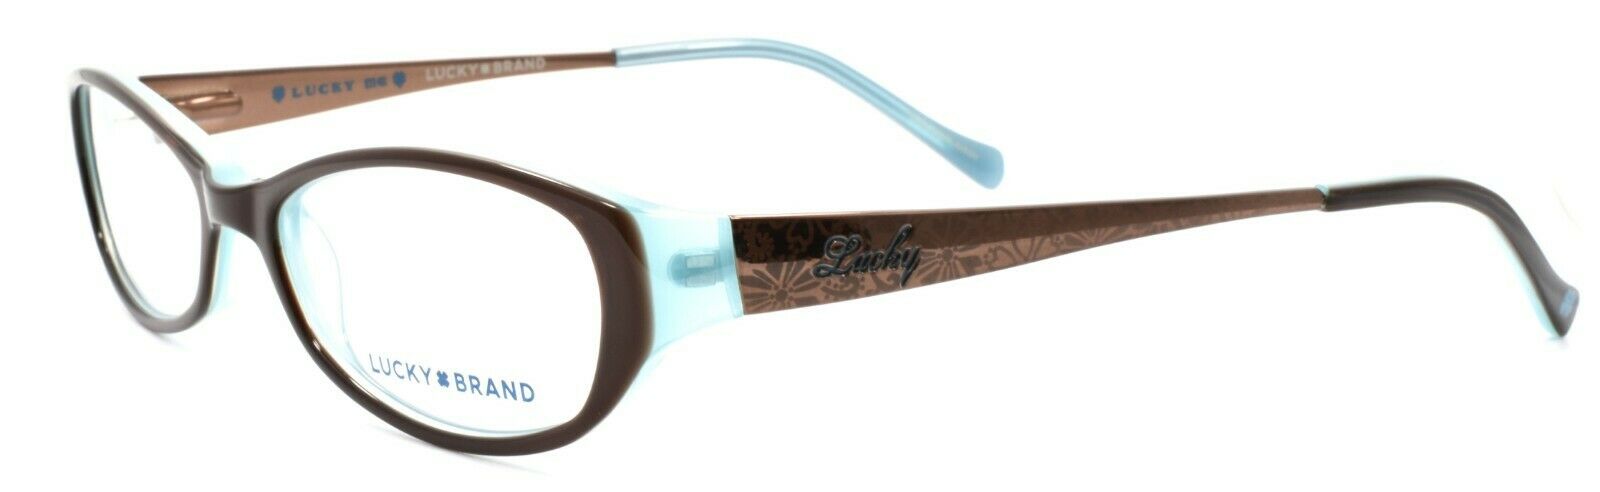 1-LUCKY BRAND Beach Trip Kids Girls Eyeglasses Frames 49-15-135 Brown-751286214956-IKSpecs